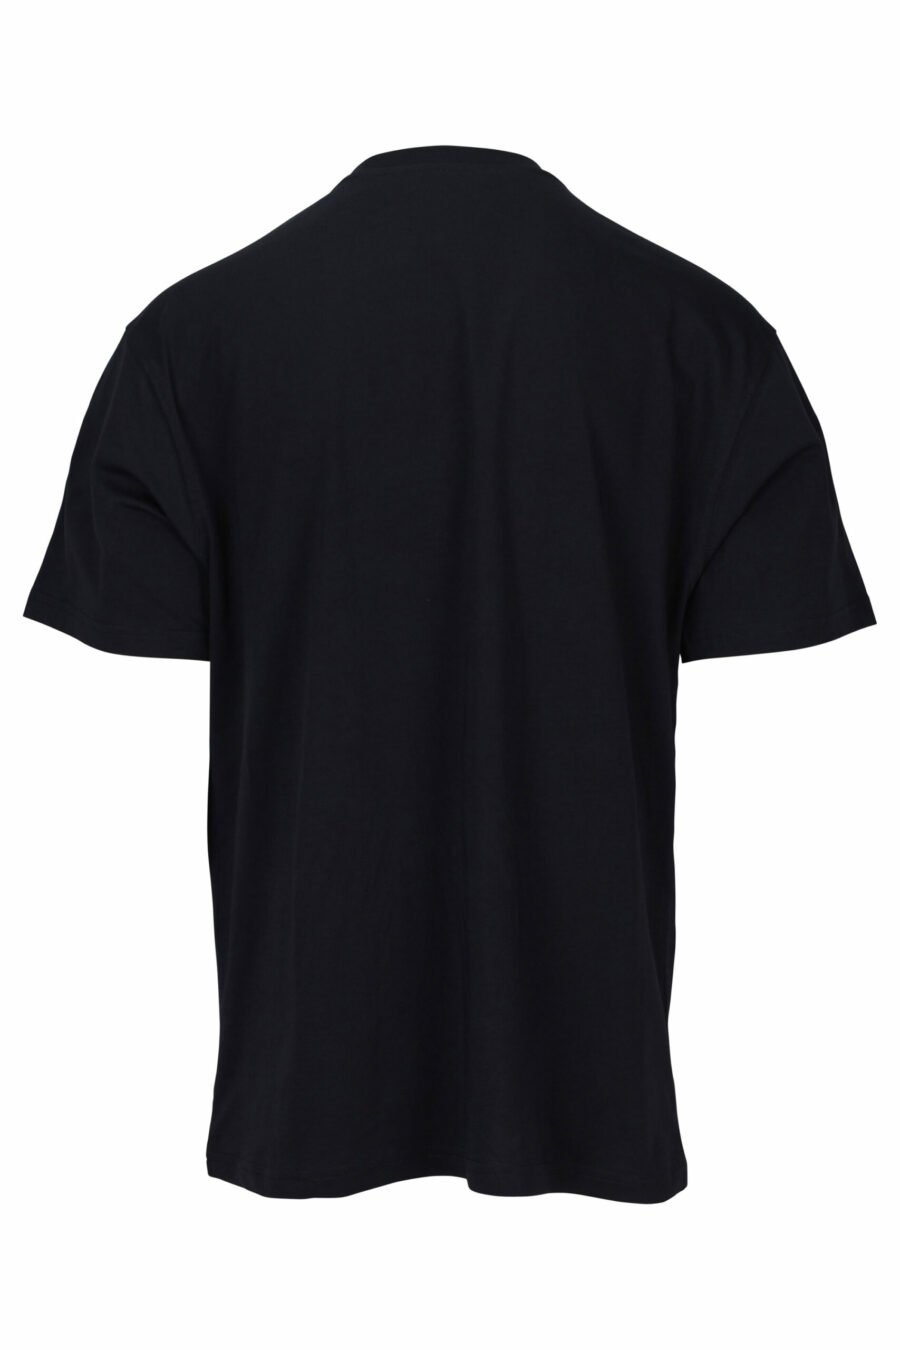 T-shirt preta com maxilogo bordado com pormenores em laranja - 889316957471 1 scaled